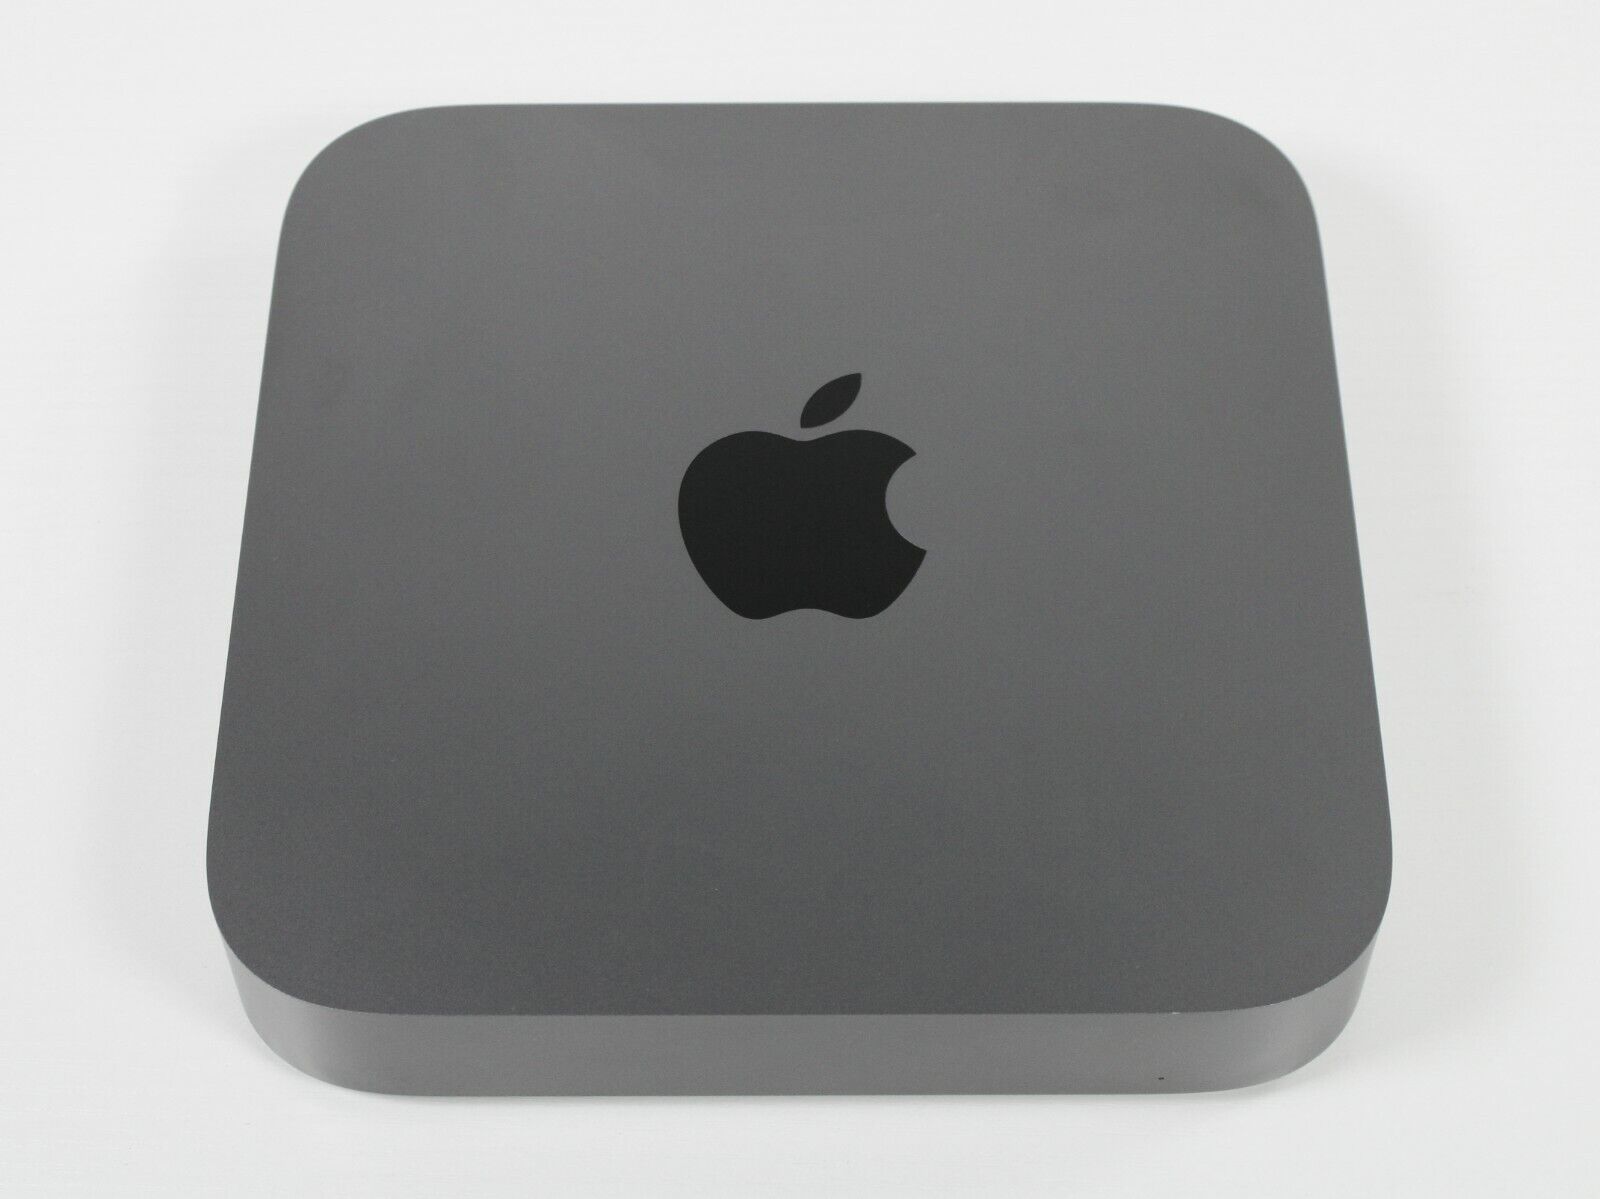 2018 Apple Mac Mini Custom Up To 6-Core i5 64GB RAM & 1TB SSD - 1 YEAR WARRANTY